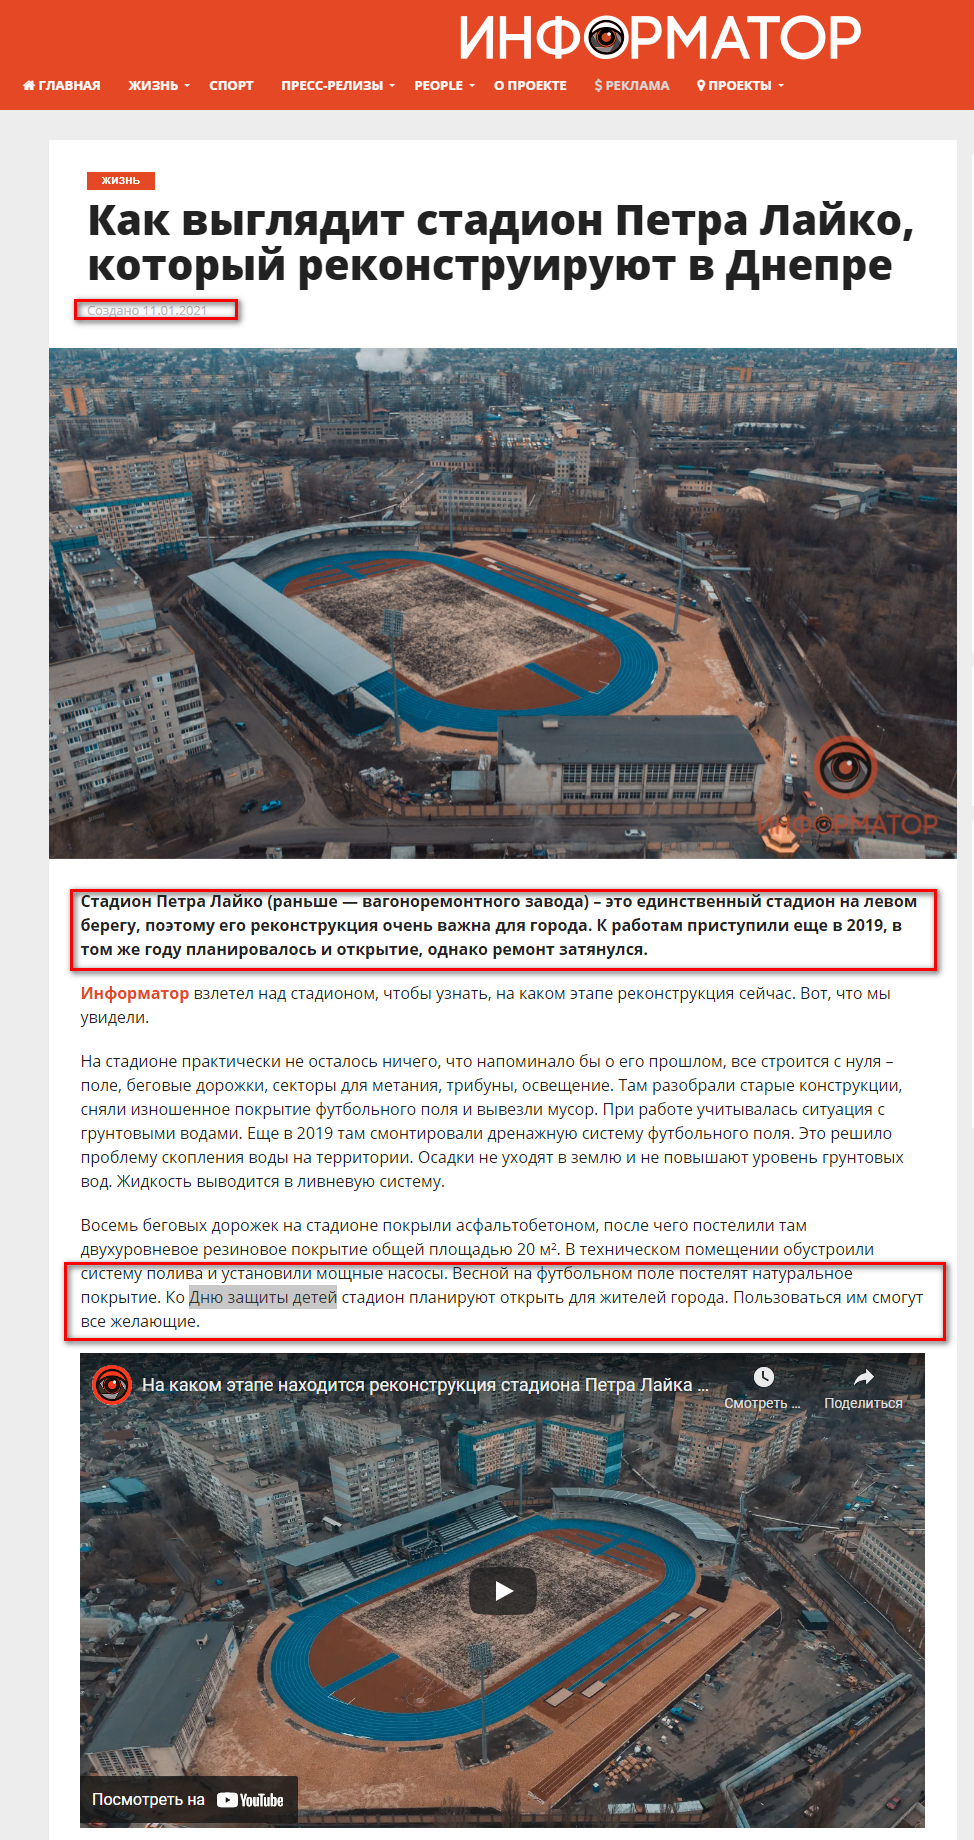 https://dp.informator.ua/2021/01/11/kak-vyglyadit-stadion-petra-lajko-kotoryj-rekonstruiruyut-v-dnepre/